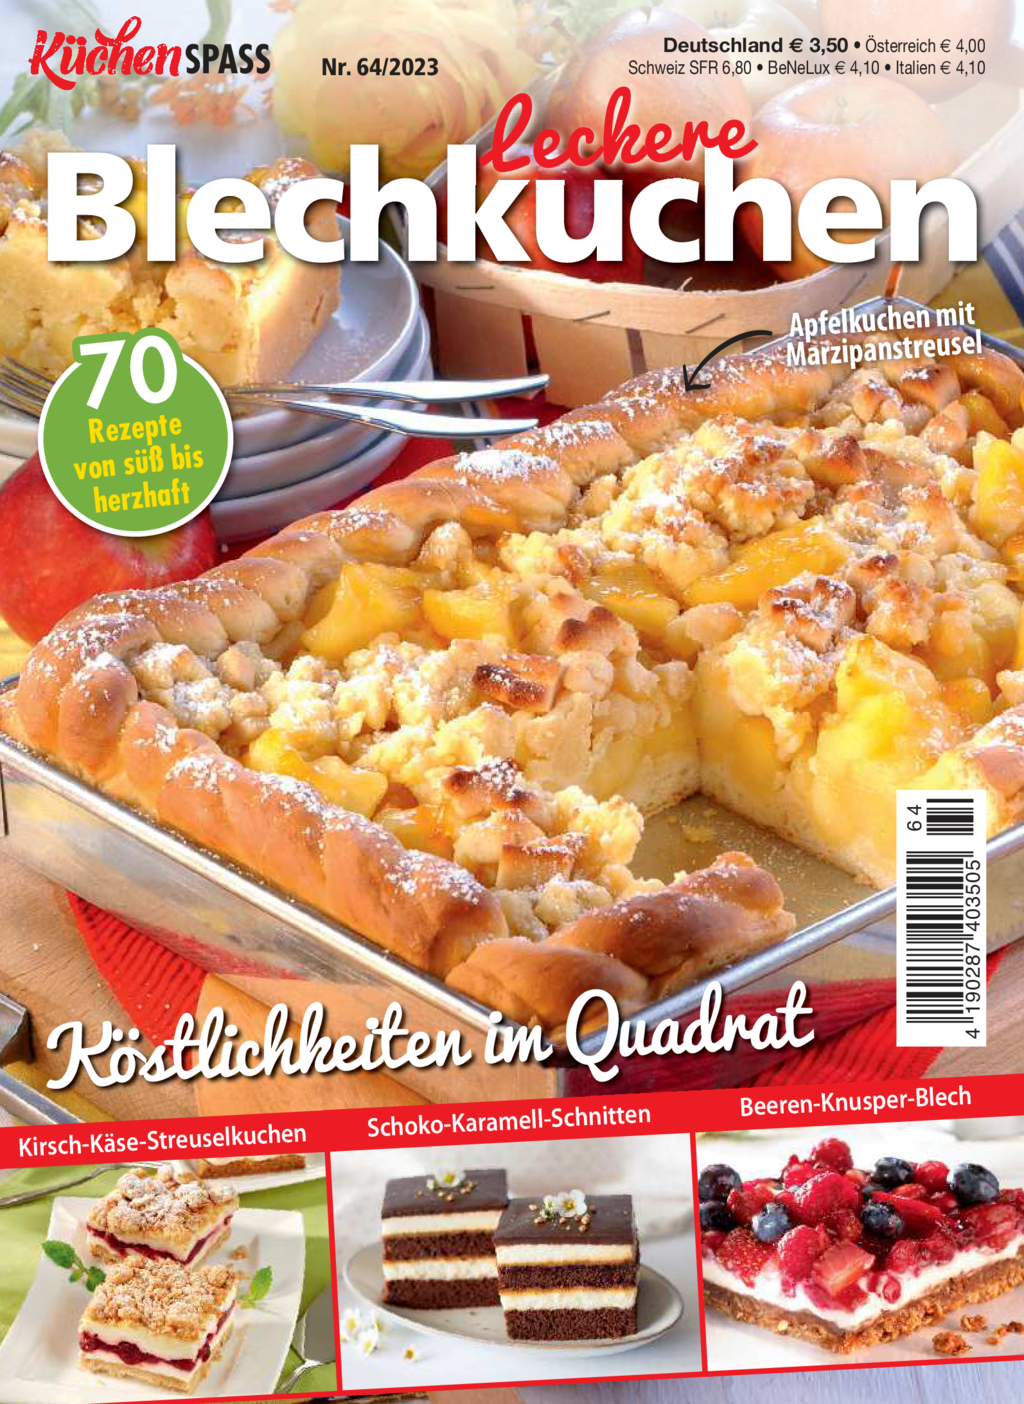 KüchenSPASS 64/2023 - leckere Blechkuchen